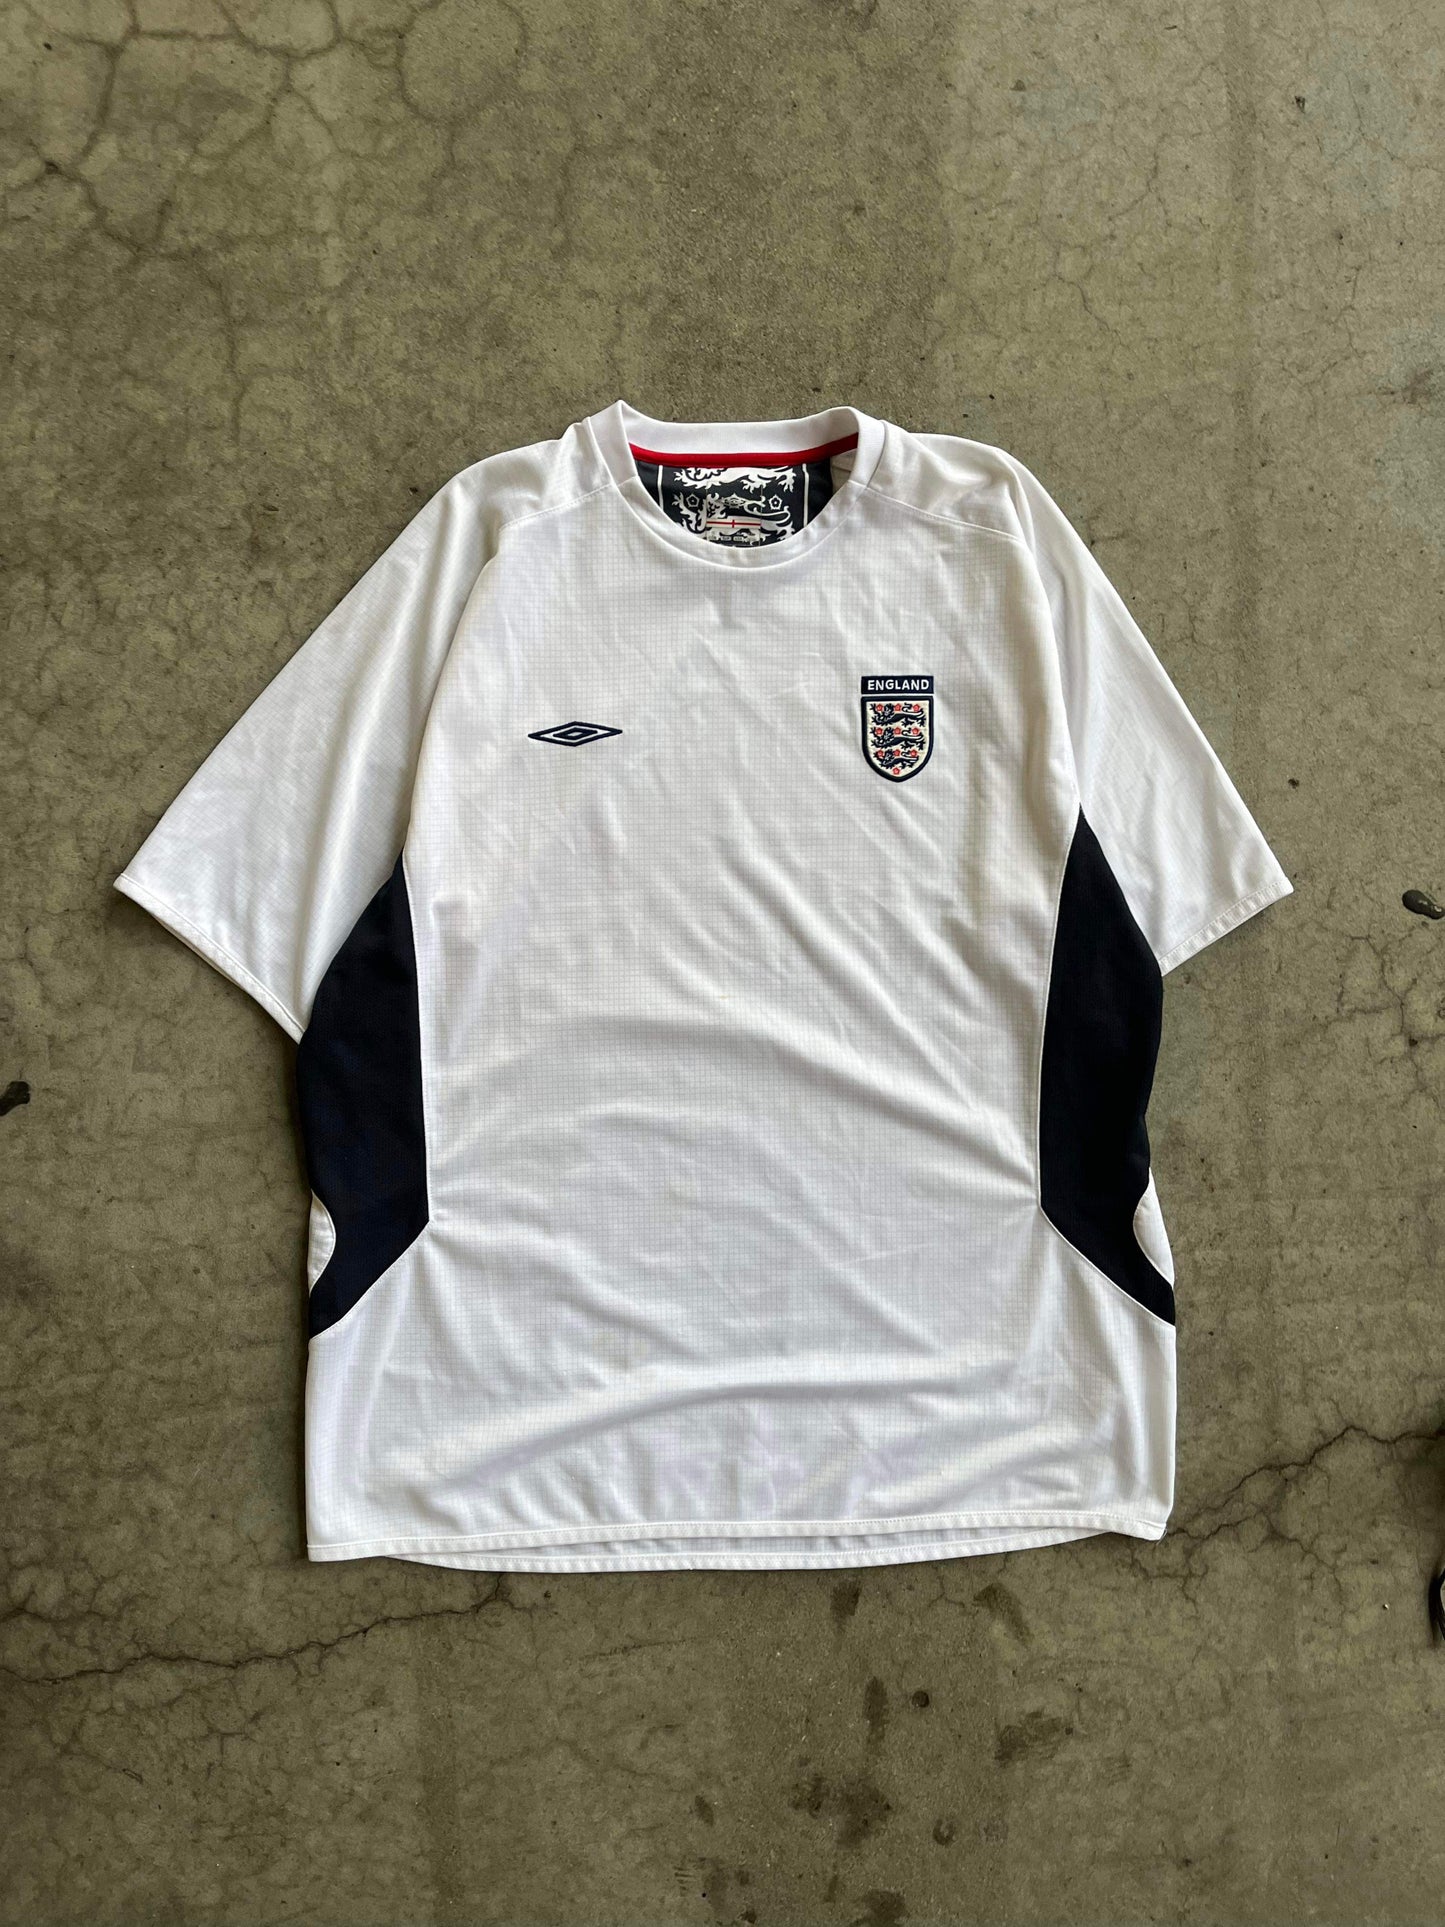 (XL) Umbro England Kit